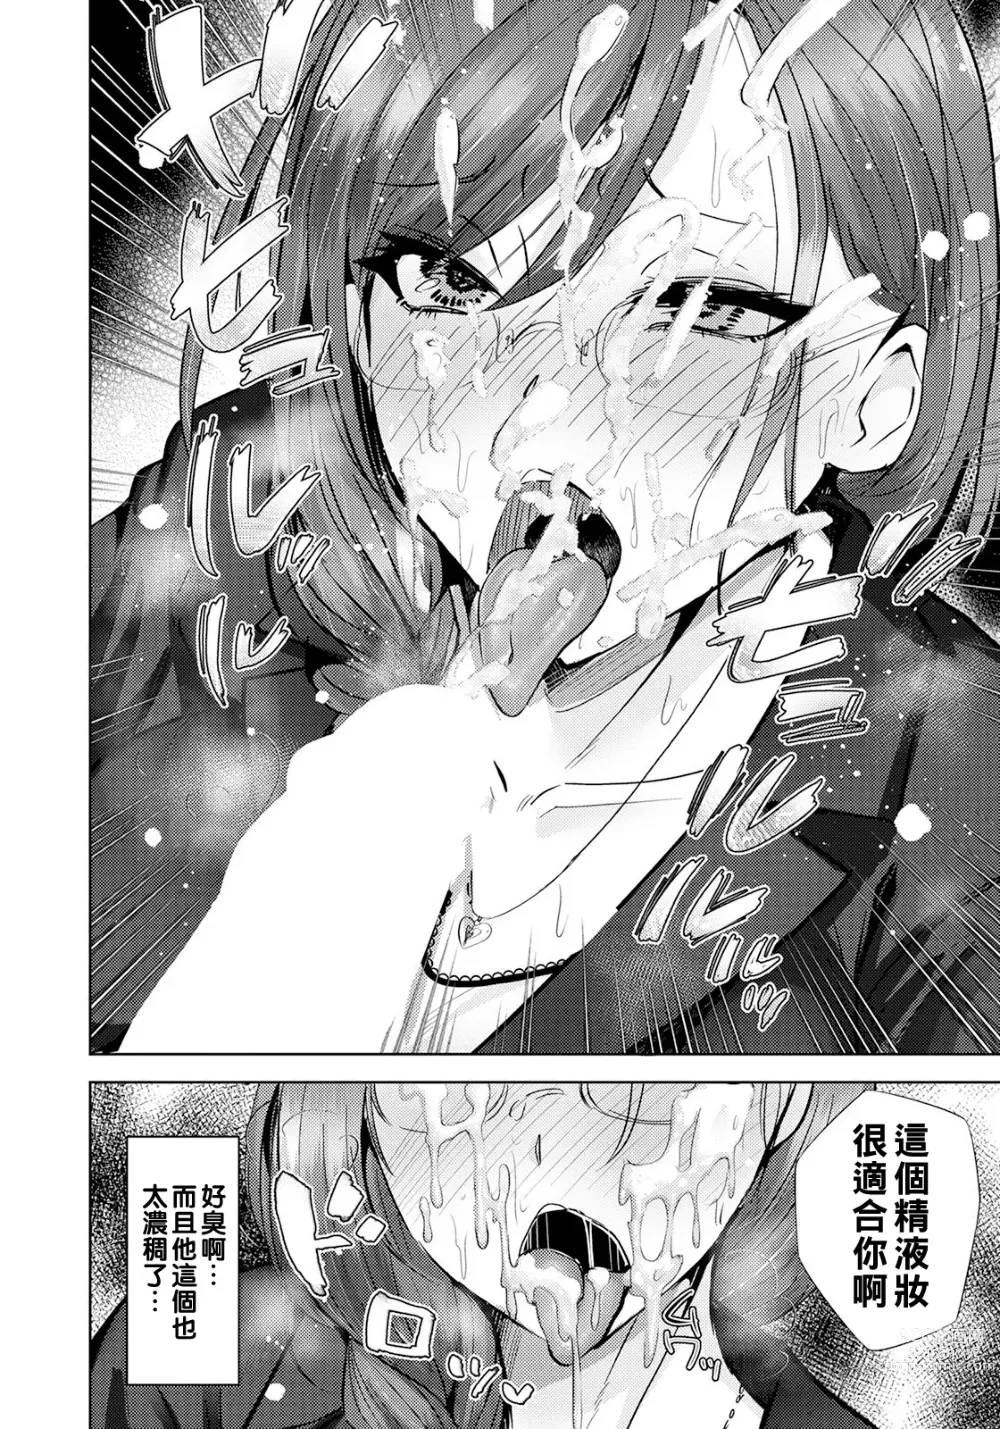 Page 6 of manga Inkou Revival